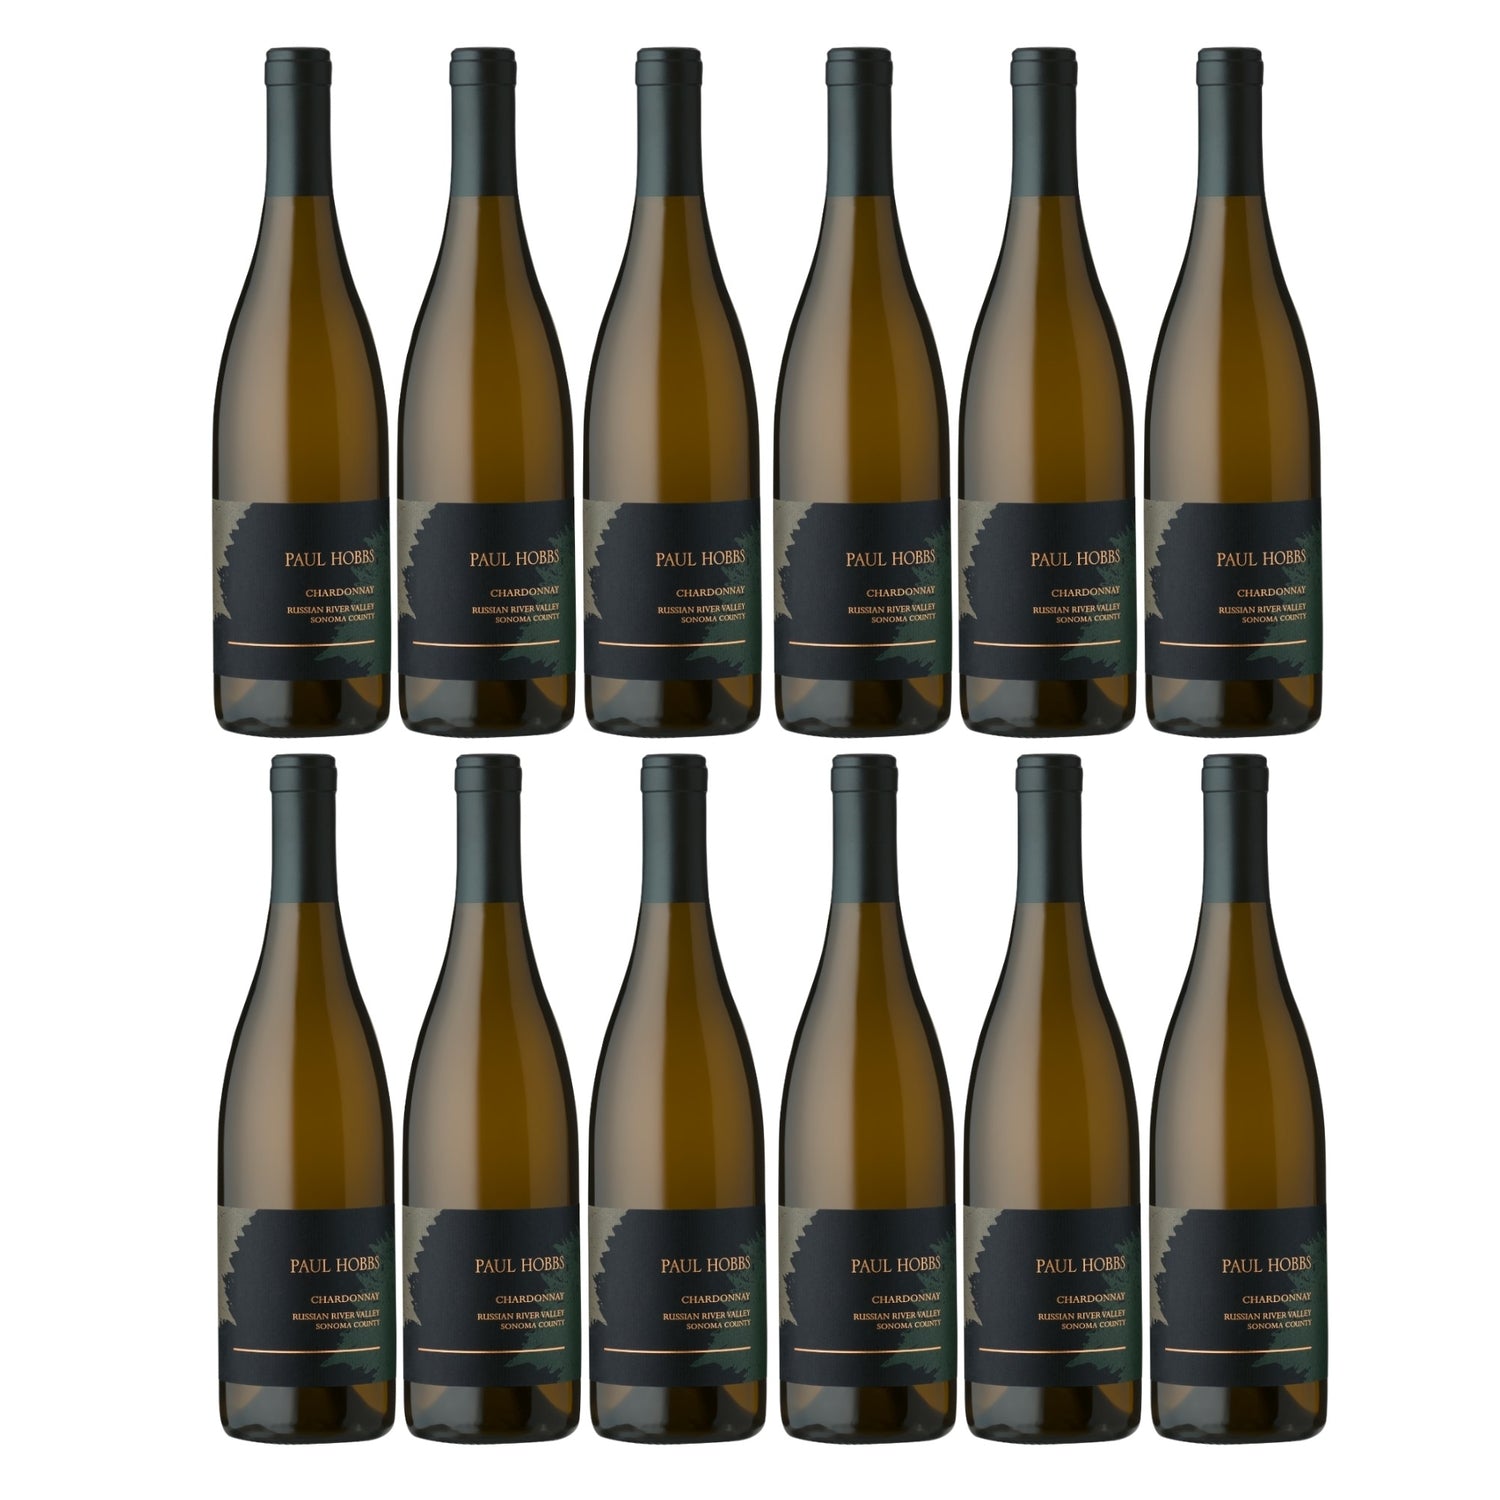 Paul Hobbs Chardonnay Russian River Valley Weißwein Wein trocken Kalifornien (12 x 0.75l) - Versanel -